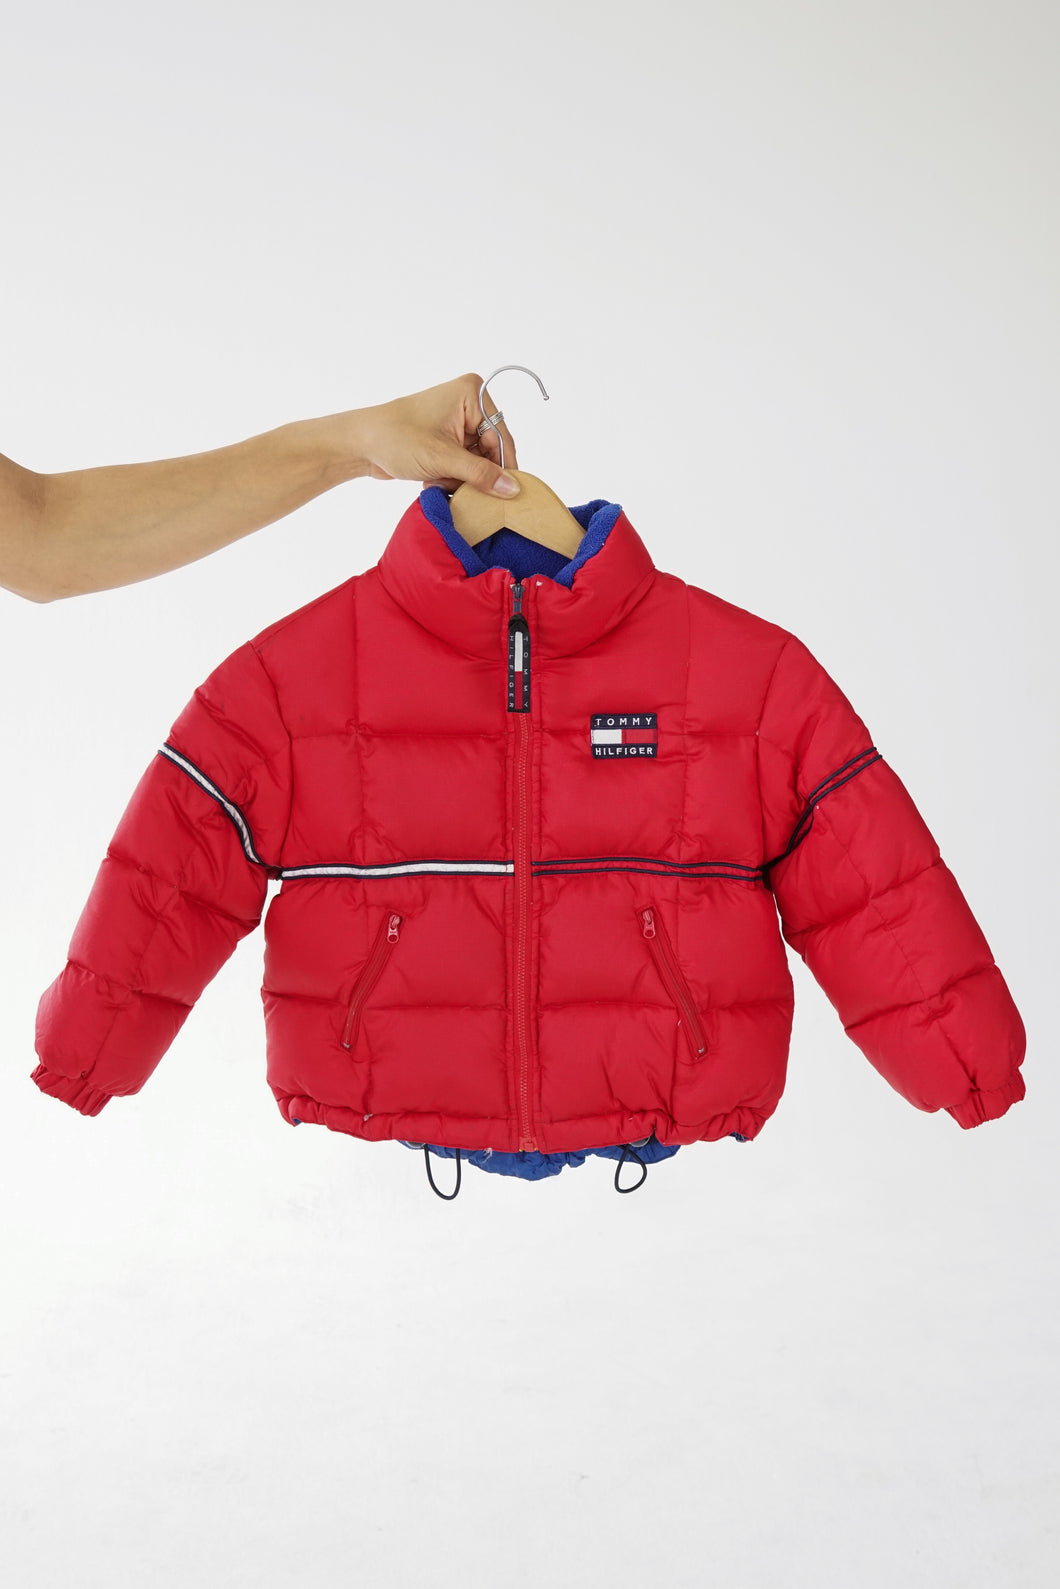 Manteau puffer Tommy Hilfiger rouge pour enfant taille 4 ans